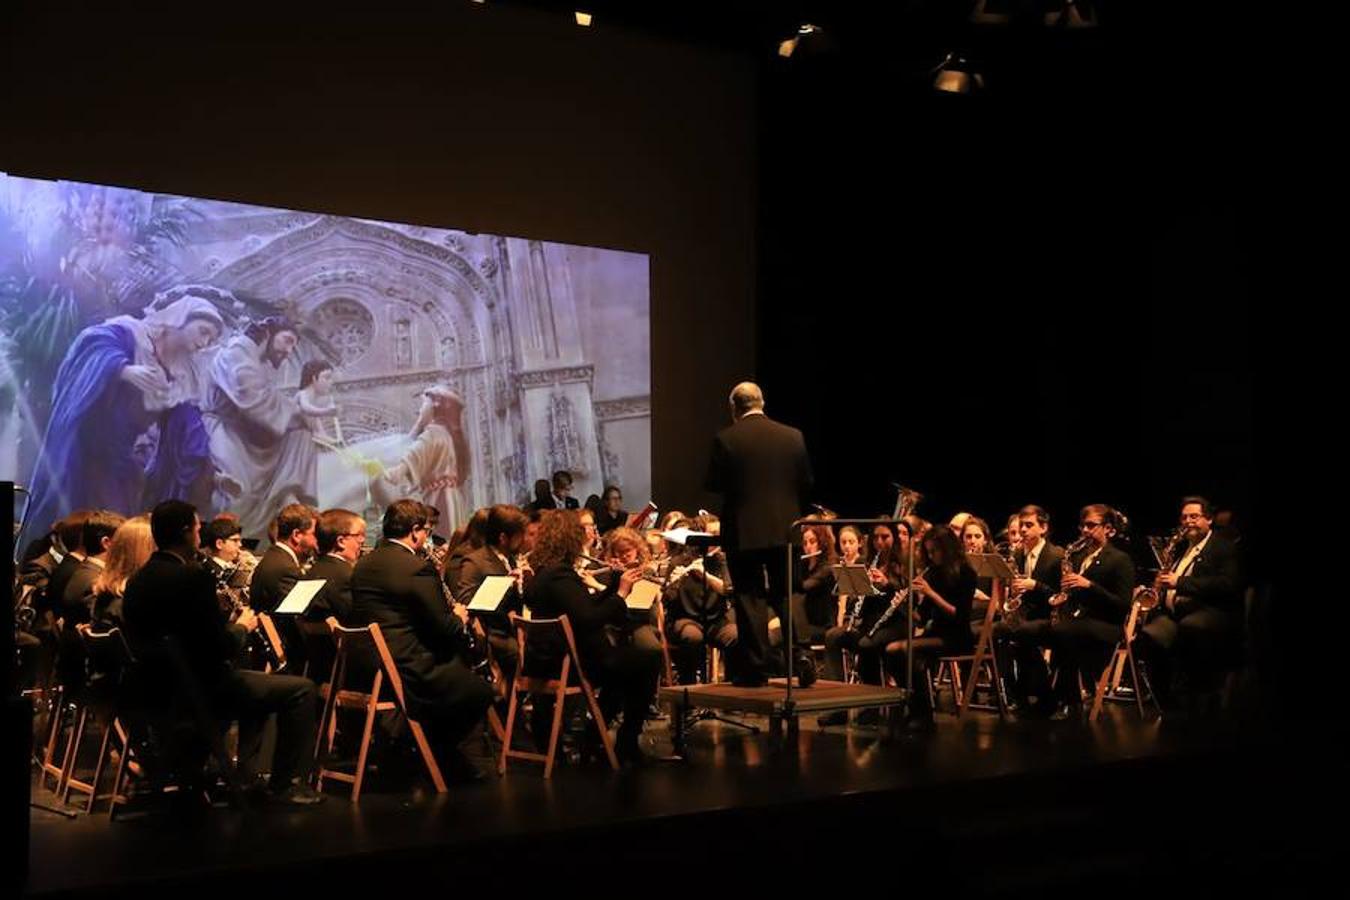 Concierto de música de Semana Santa y procesional en la localidad de Alba de Tormes